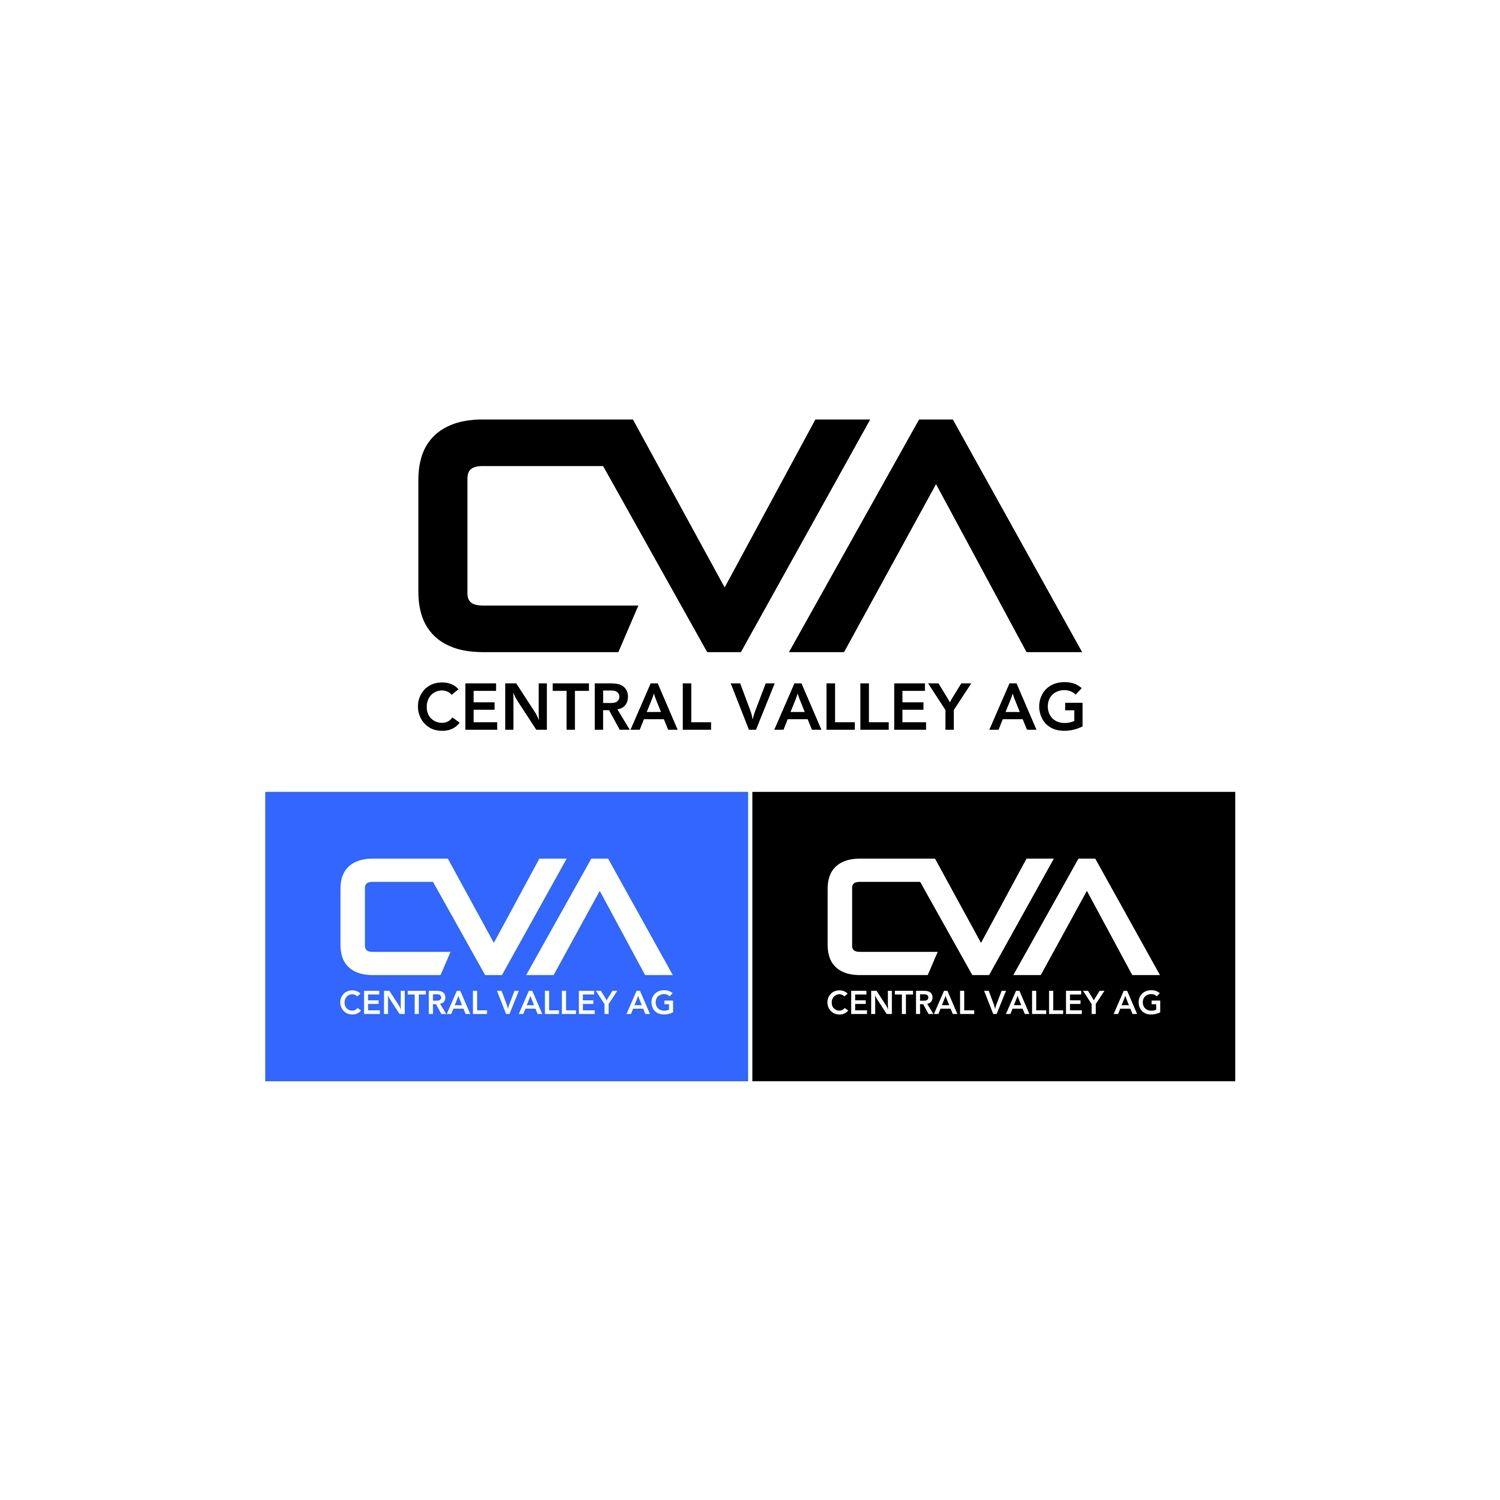 CVA Logo - Logo Design for Central Valley Ag or CVA by PUISI RAVEN. Design